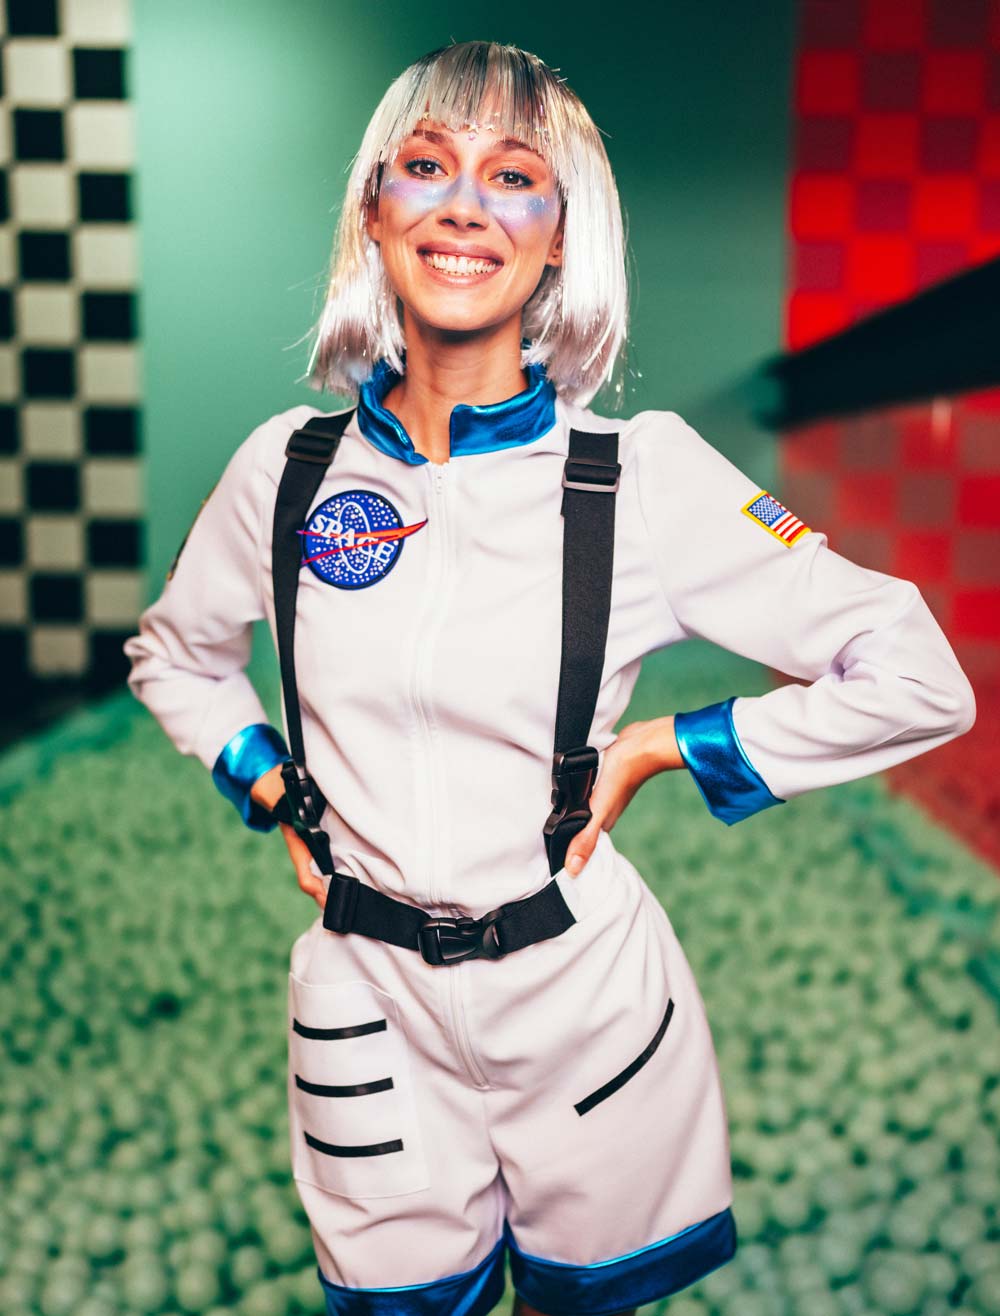 Space Kostüme für Karneval günstig kaufen